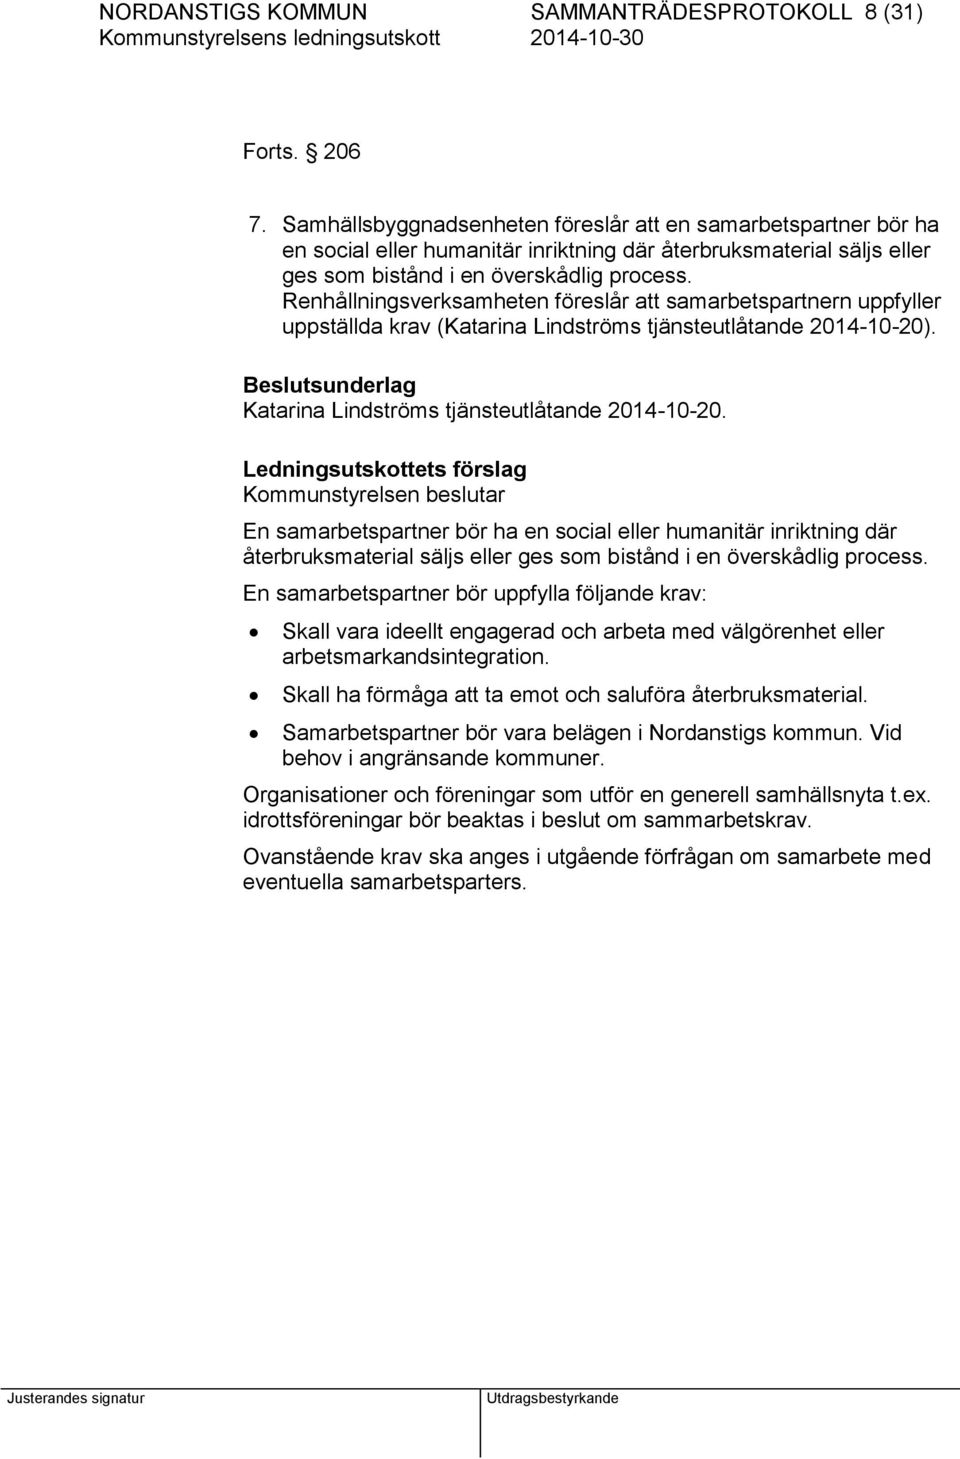 Renhållningsverksamheten föreslår att samarbetspartnern uppfyller uppställda krav (Katarina Lindströms tjänsteutlåtande 2014-10-20). Katarina Lindströms tjänsteutlåtande 2014-10-20.